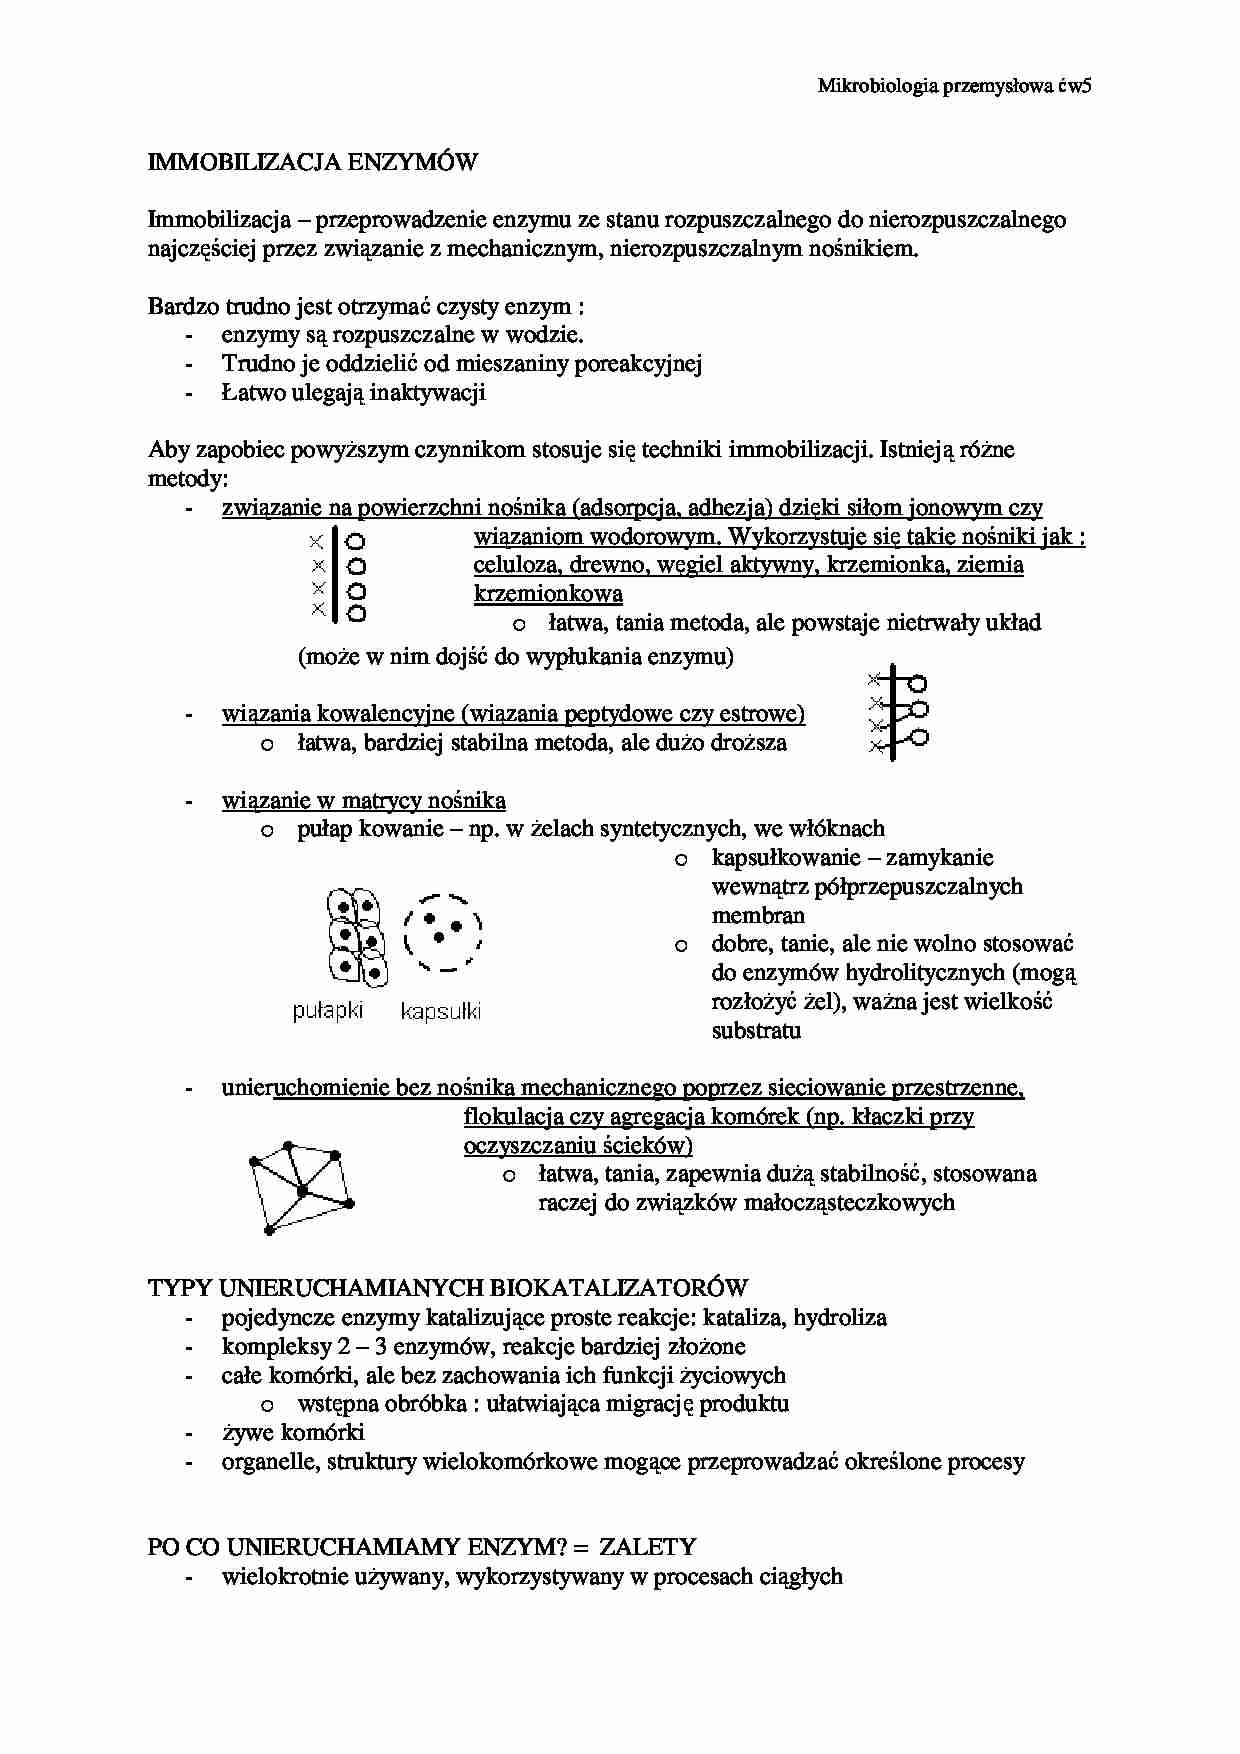 Immobilizacja enzymów-opracowanie - strona 1